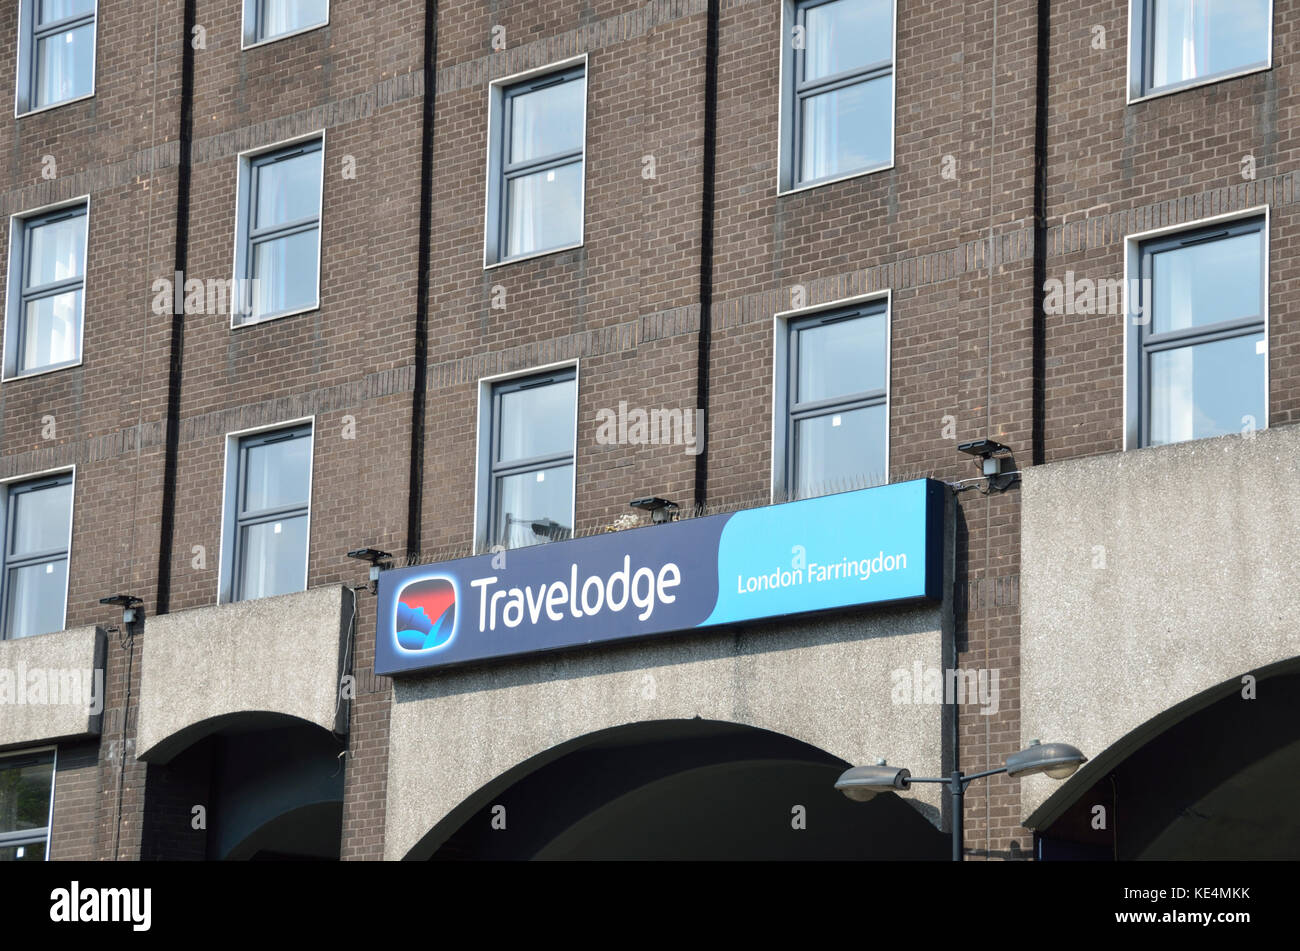 Travelodge London Farringdon Hotel, London, UK. Stock Photo